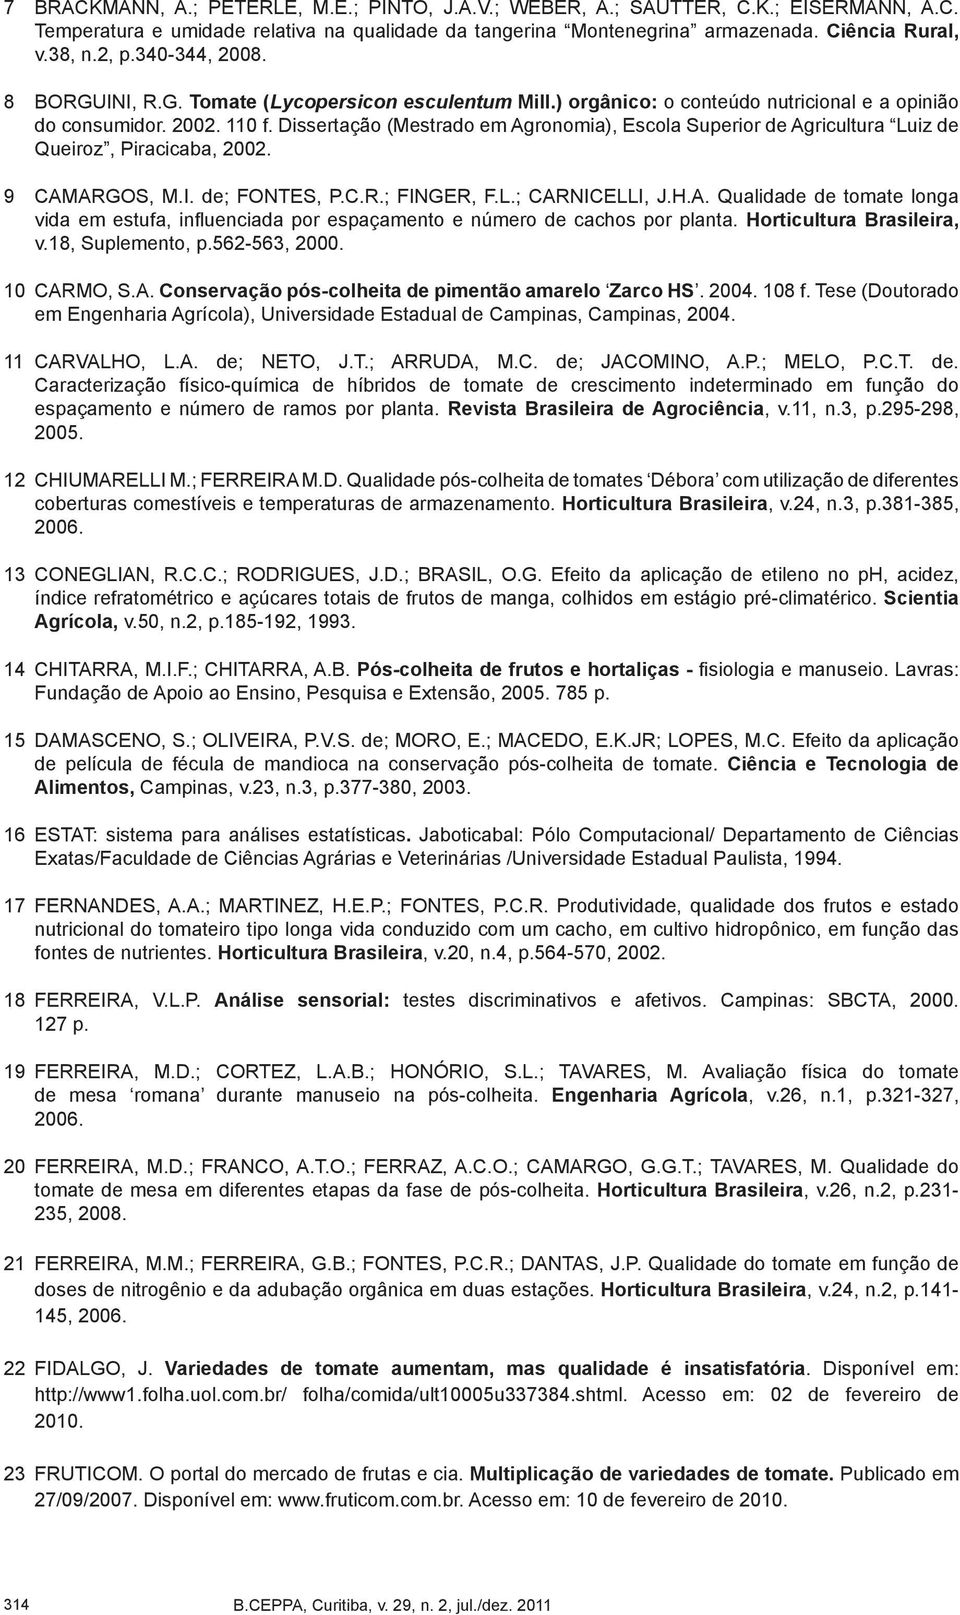 Dissertação (Mestrado em Agronomia), Escola Superior de Agricultura Luiz de Queiroz, Piracicaba, 2002. 9 CAMARGOS, M.I. de; FONTES, P.C.R.; FINGER, F.L.; CARNICELLI, J.H.A. Qualidade de tomate longa vida em estufa, influenciada por espaçamento e número de cachos por planta.